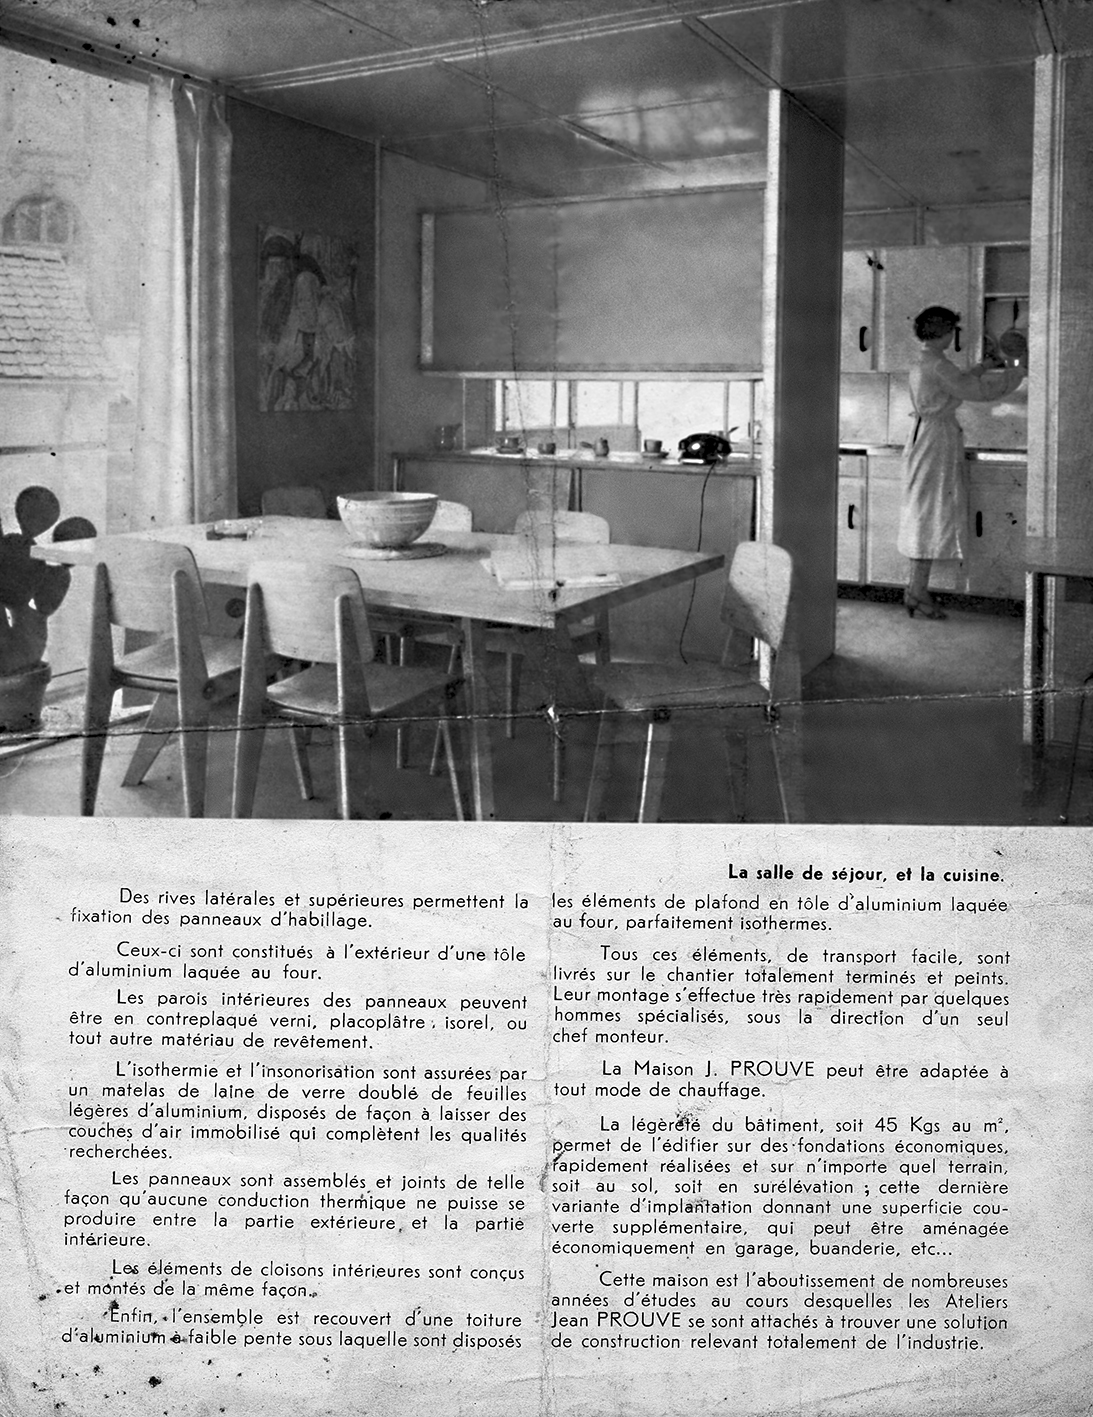 “The Prouvé House”. Advertising brochure for the Ateliers Jean Prouvé, Studal, Paris, ca. 1950.